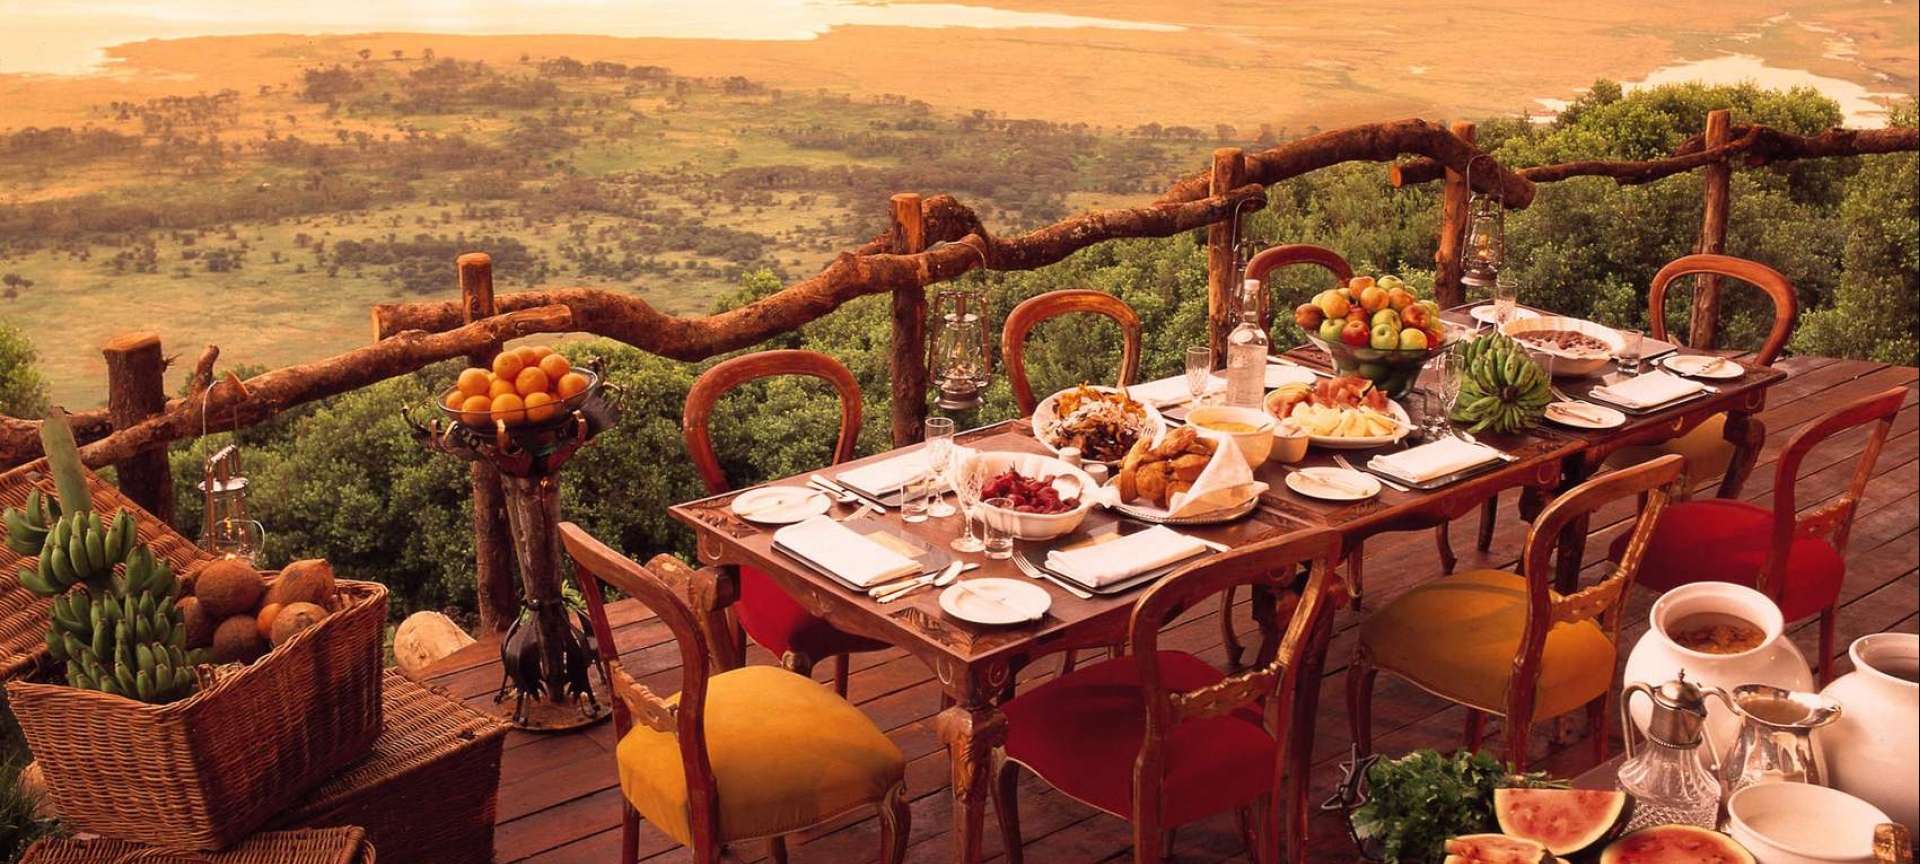 Ngorongoro Crater - Africa Wildlife Safaris